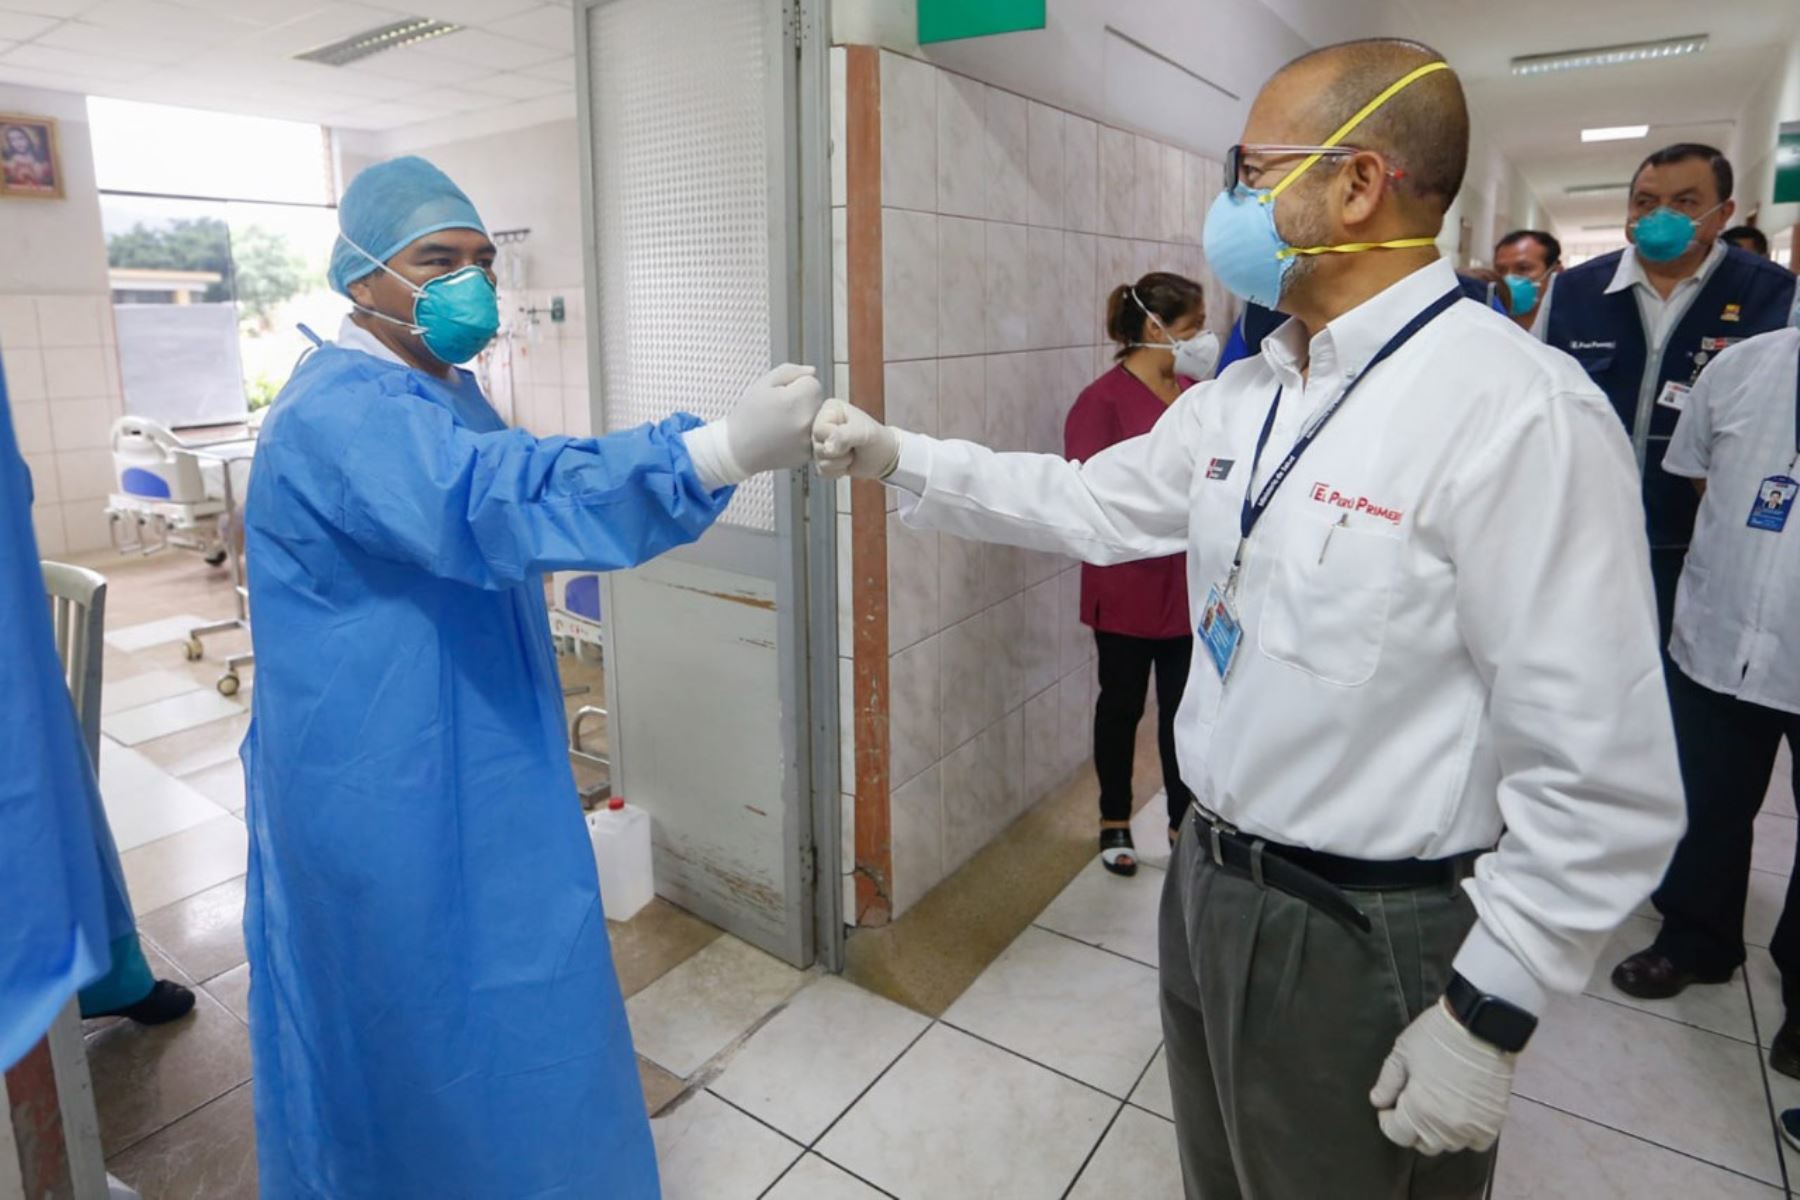 Miinistro de Salud, Victor Zamora  inspecciona el Hospital Hipólito Unanue, en El Agustino, para verificar que el personal cuente con los implementos necesarios, el buen estado de las instalaciones y la atención de calidad a pacientes.
Foto: Minsa